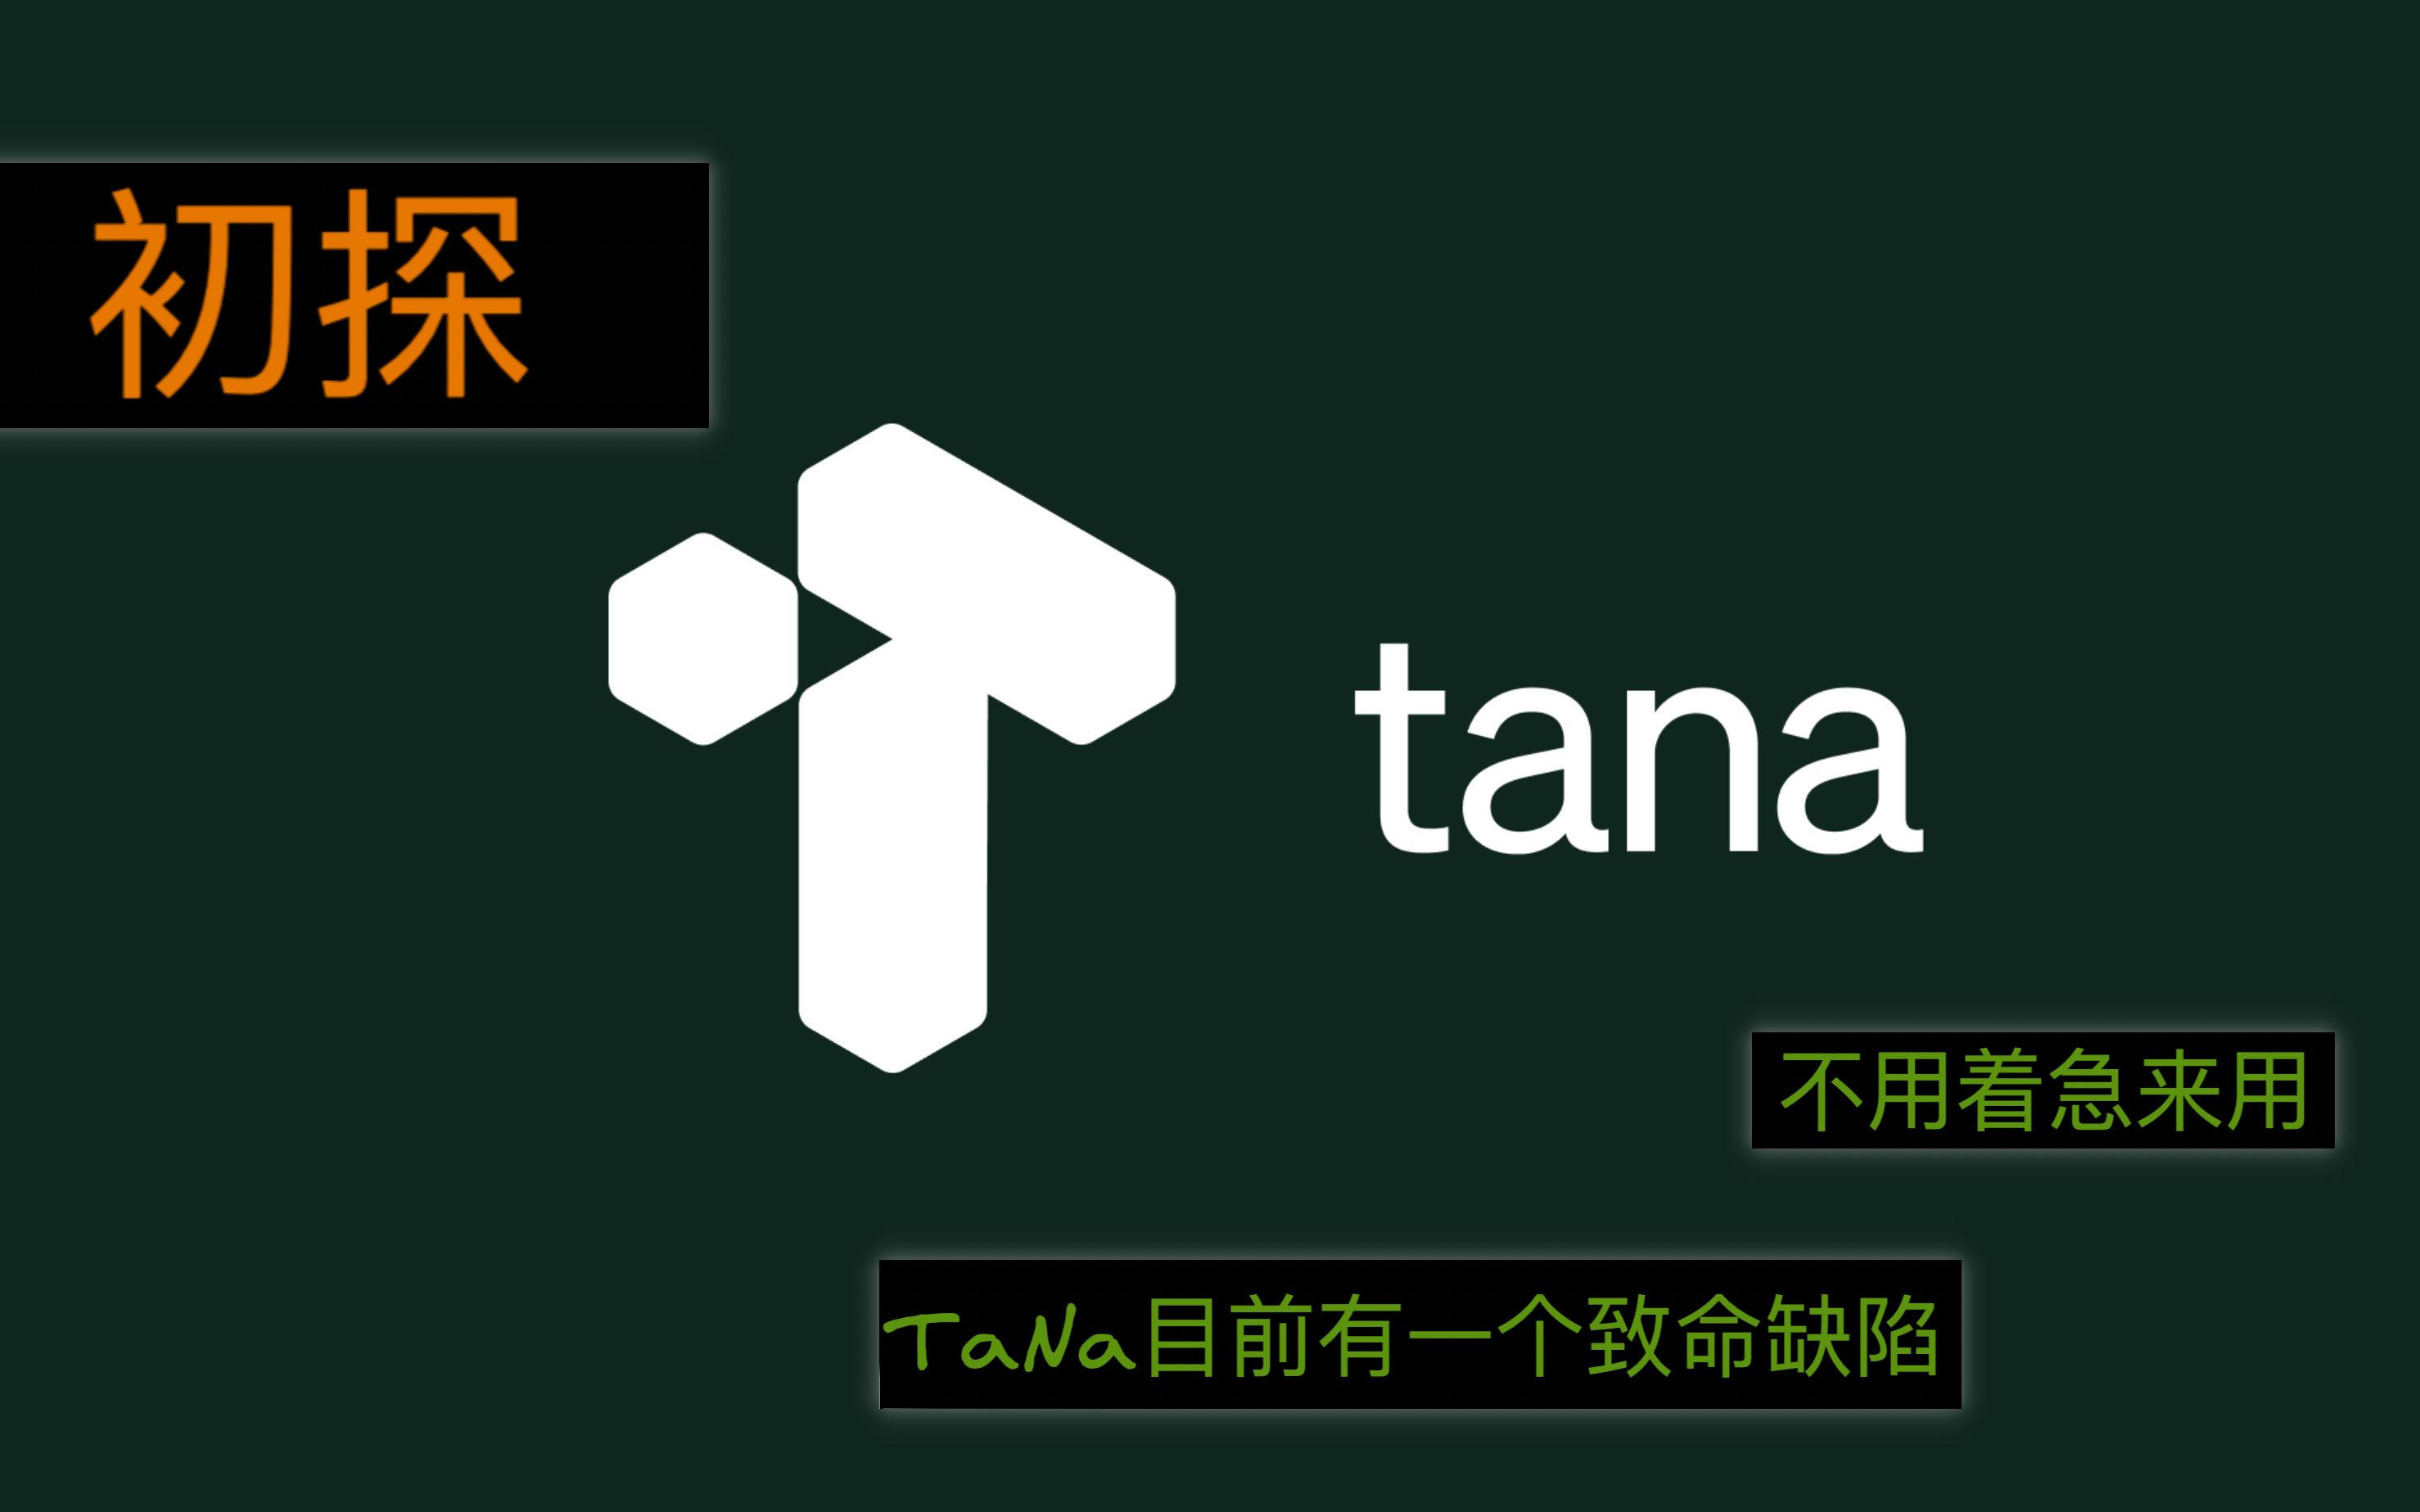 【Tana01】Tana初探，功能很丰富，但目前还有一个致命缺点。